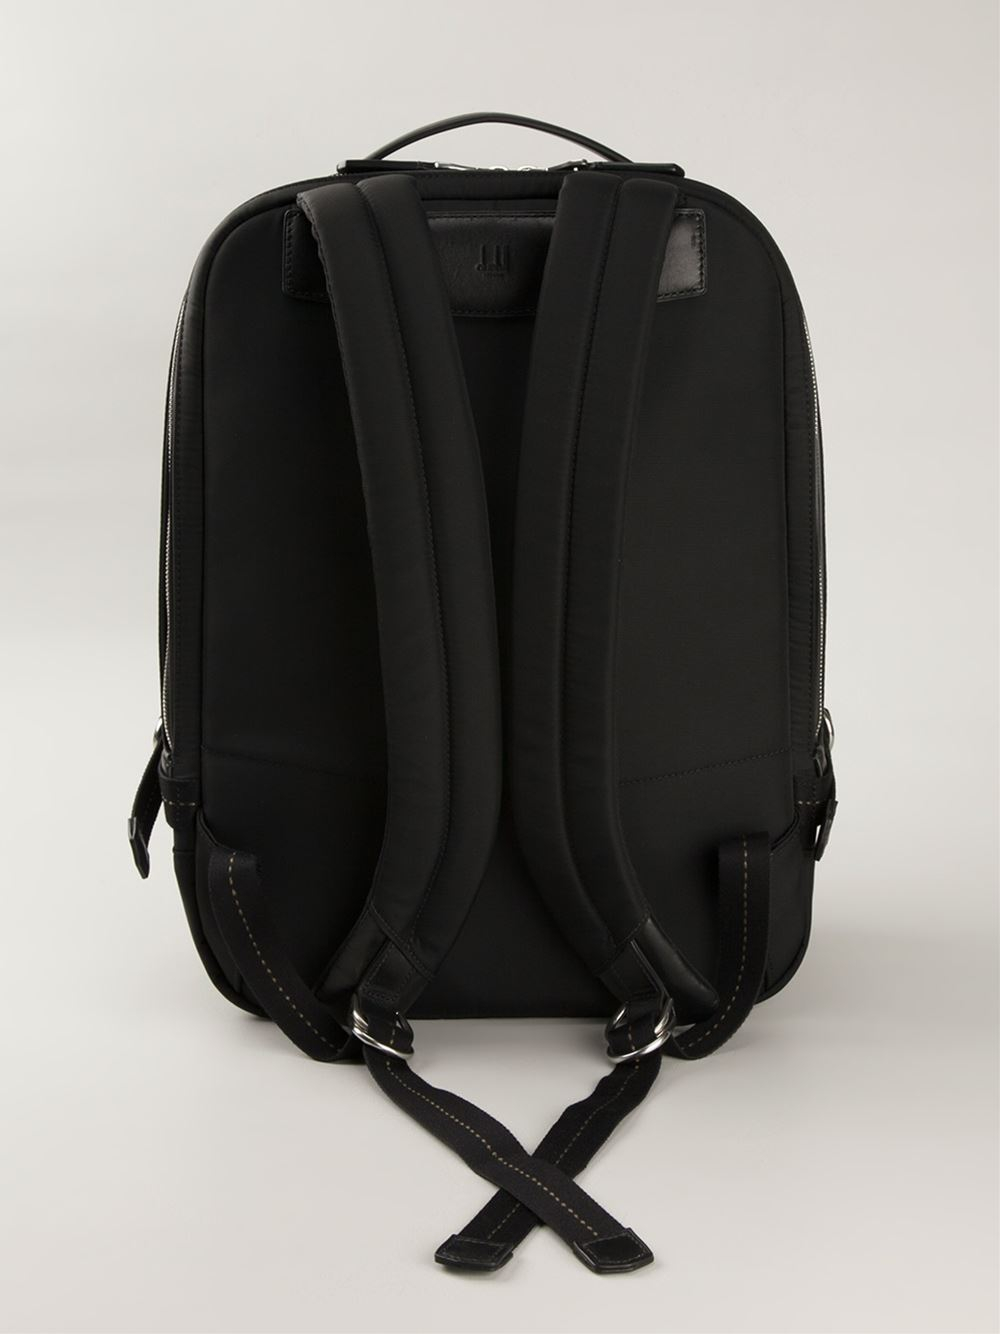 Lyst - Dunhill Front Pocket Backpack in Black for Men